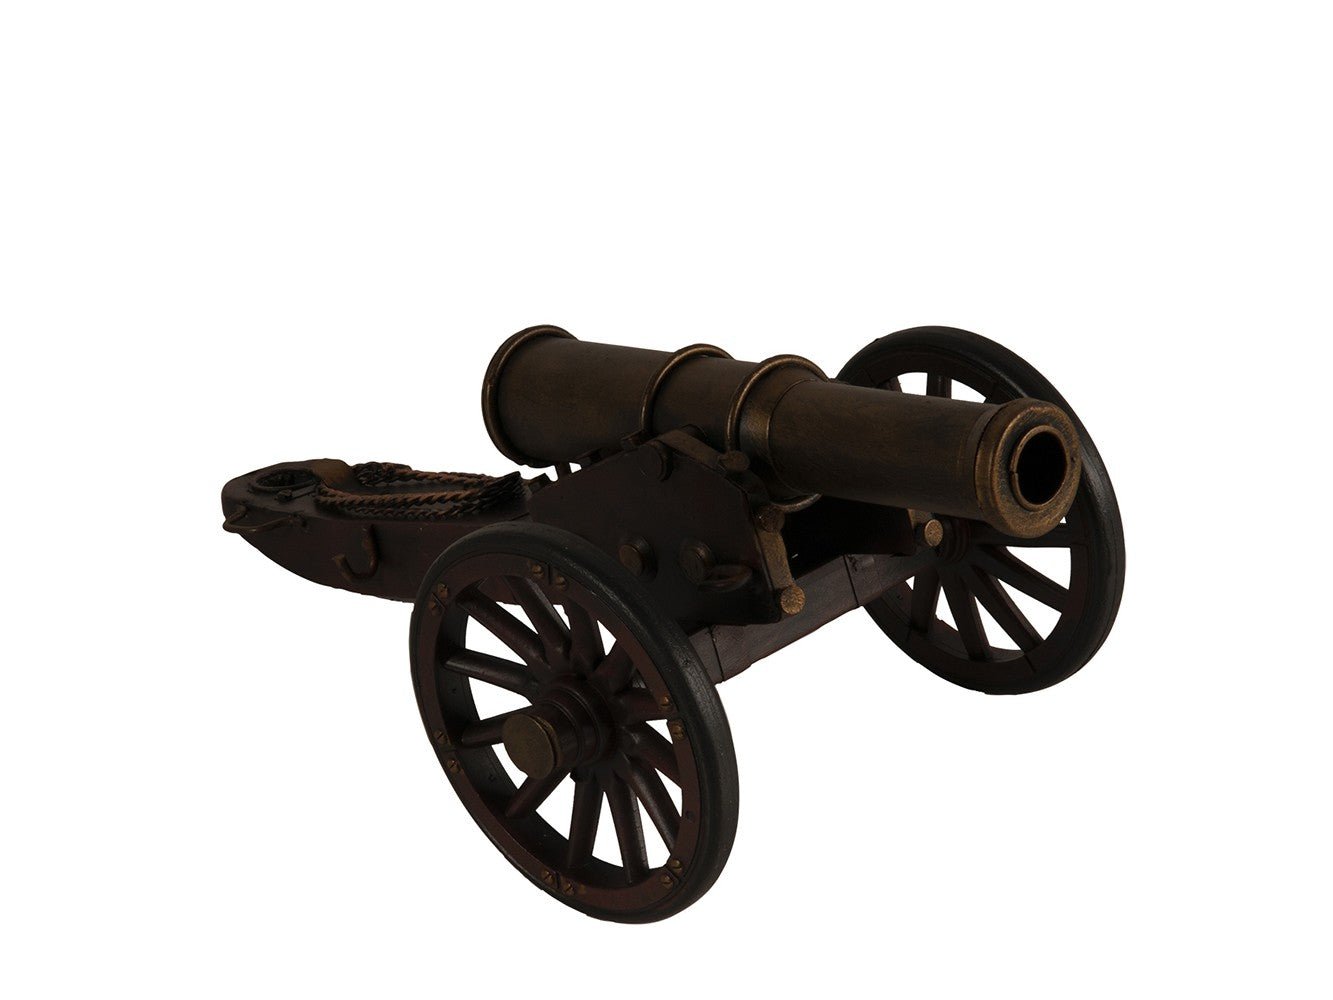 American Civil War Artillery Sculpture - Tuesday Morning-Sculptures